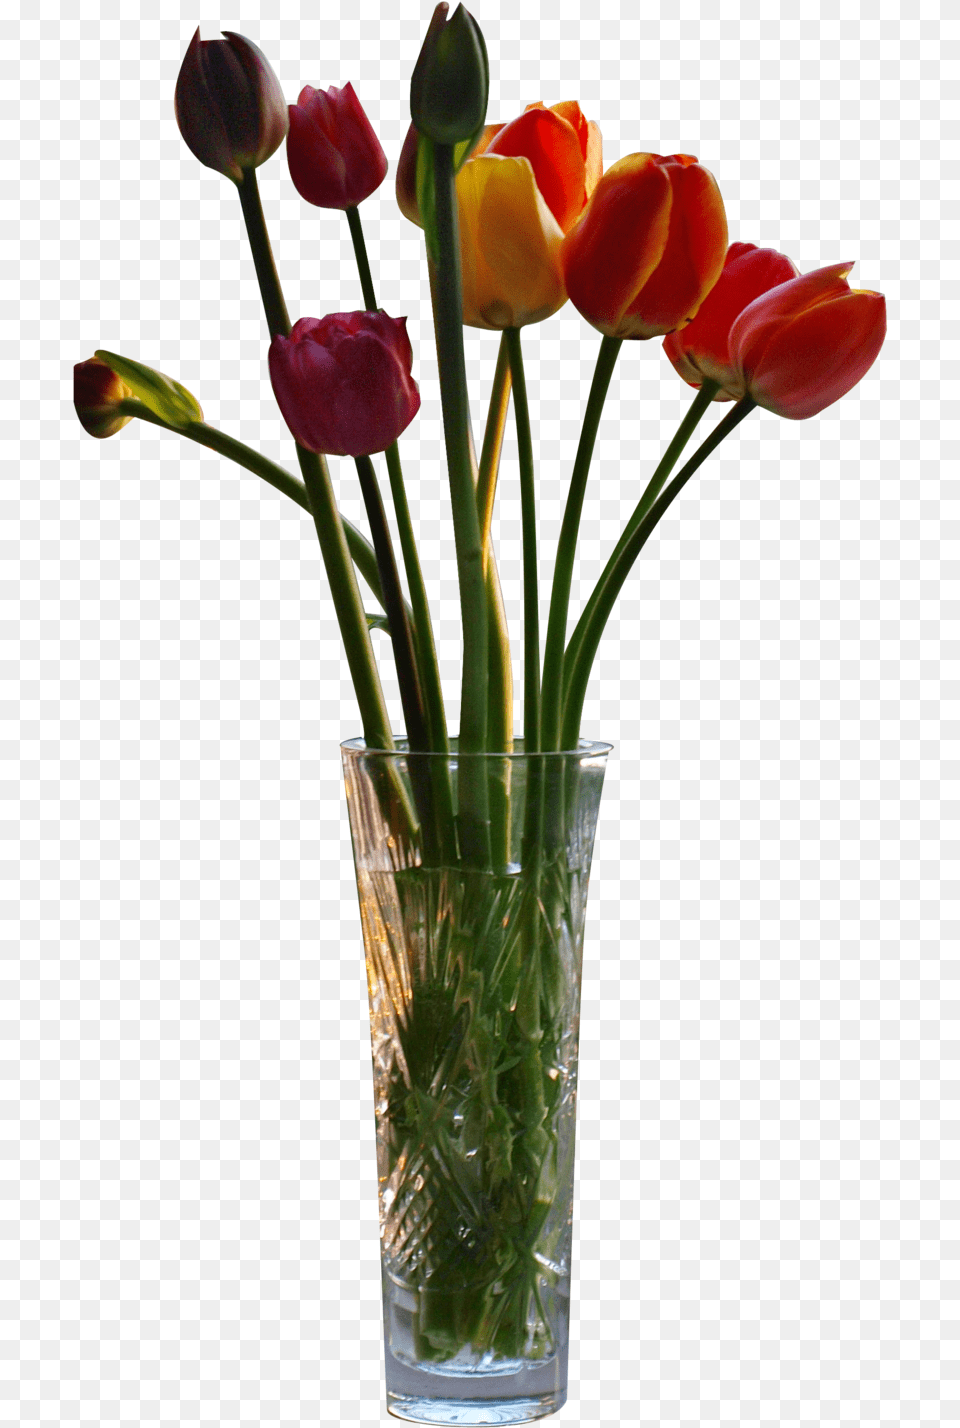 For Your Desktop Picture Flower Vase Cut Out, Flower Arrangement, Flower Bouquet, Jar, Plant Free Transparent Png